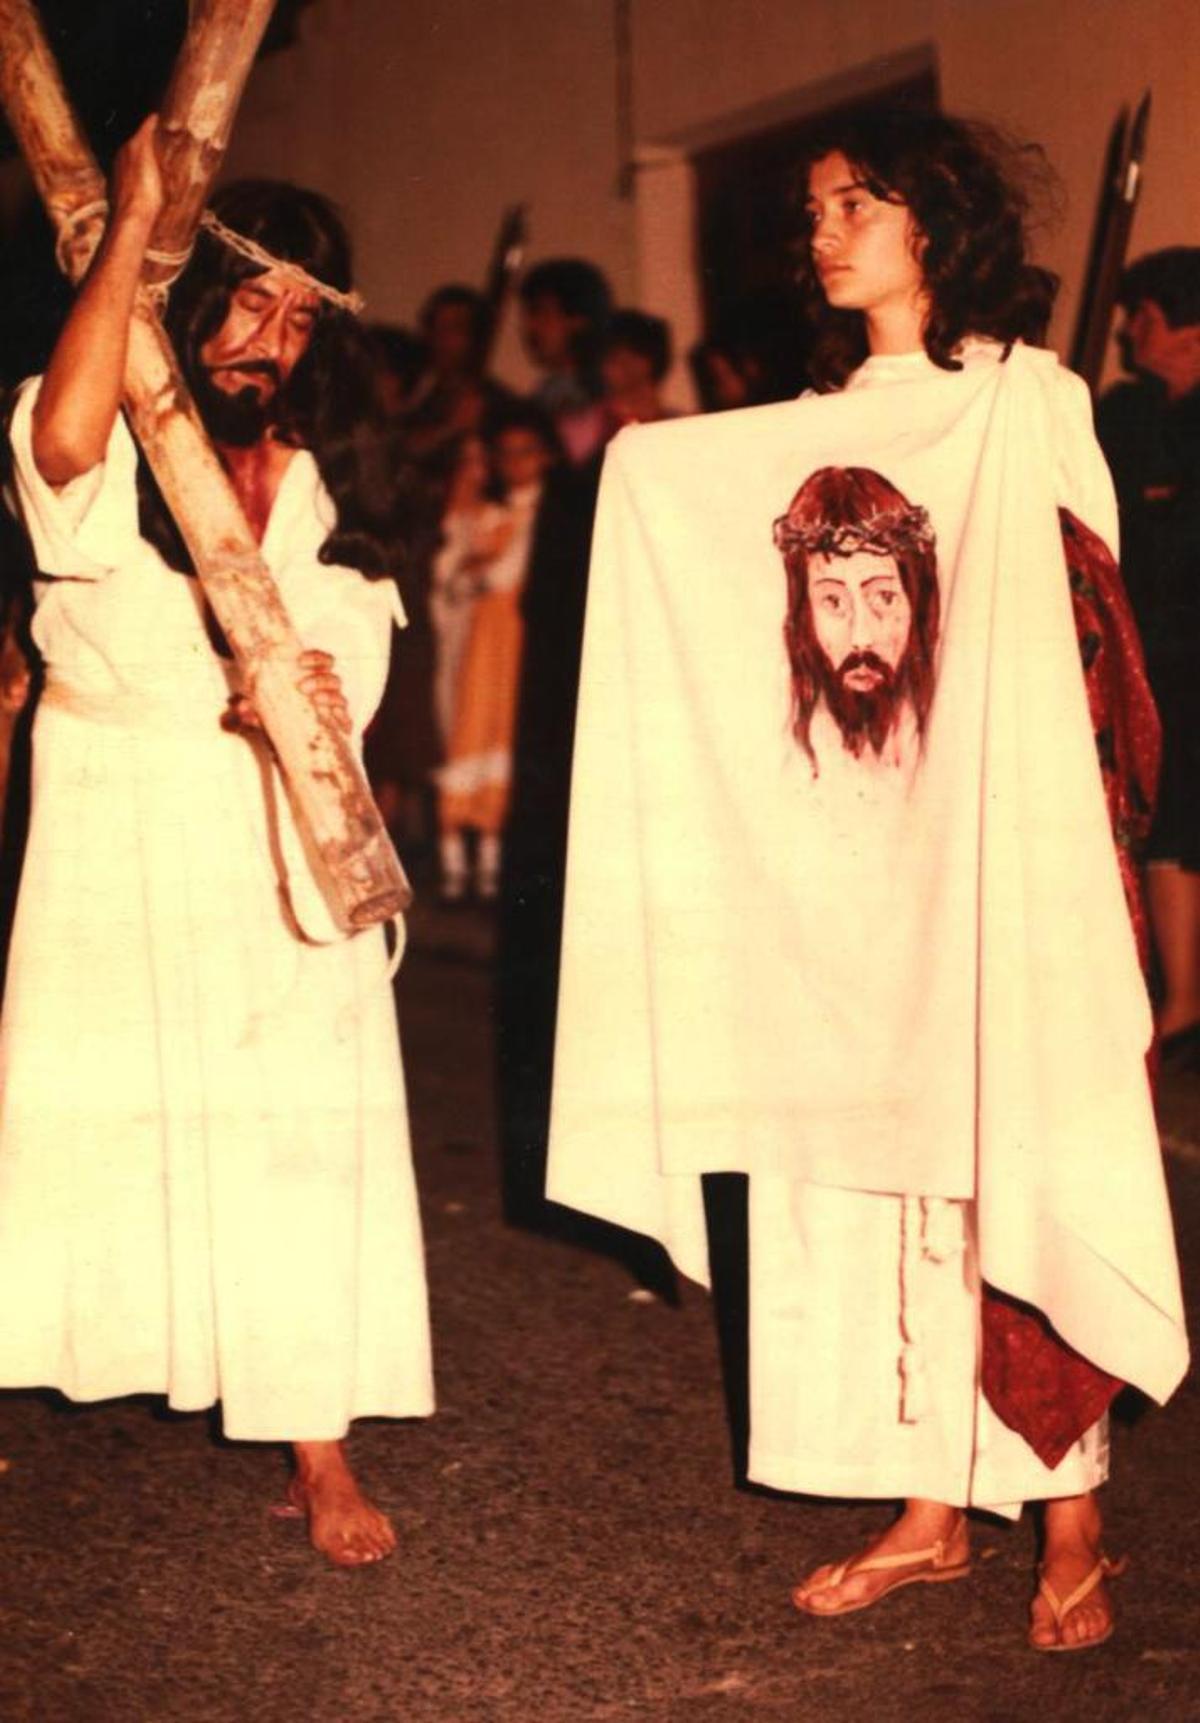 Lorenzo de la Guardia y Carmen Bolaños, en sus papeles de Jesucristo y Verónica en otra representación teatral de la Pasión de Cristo.